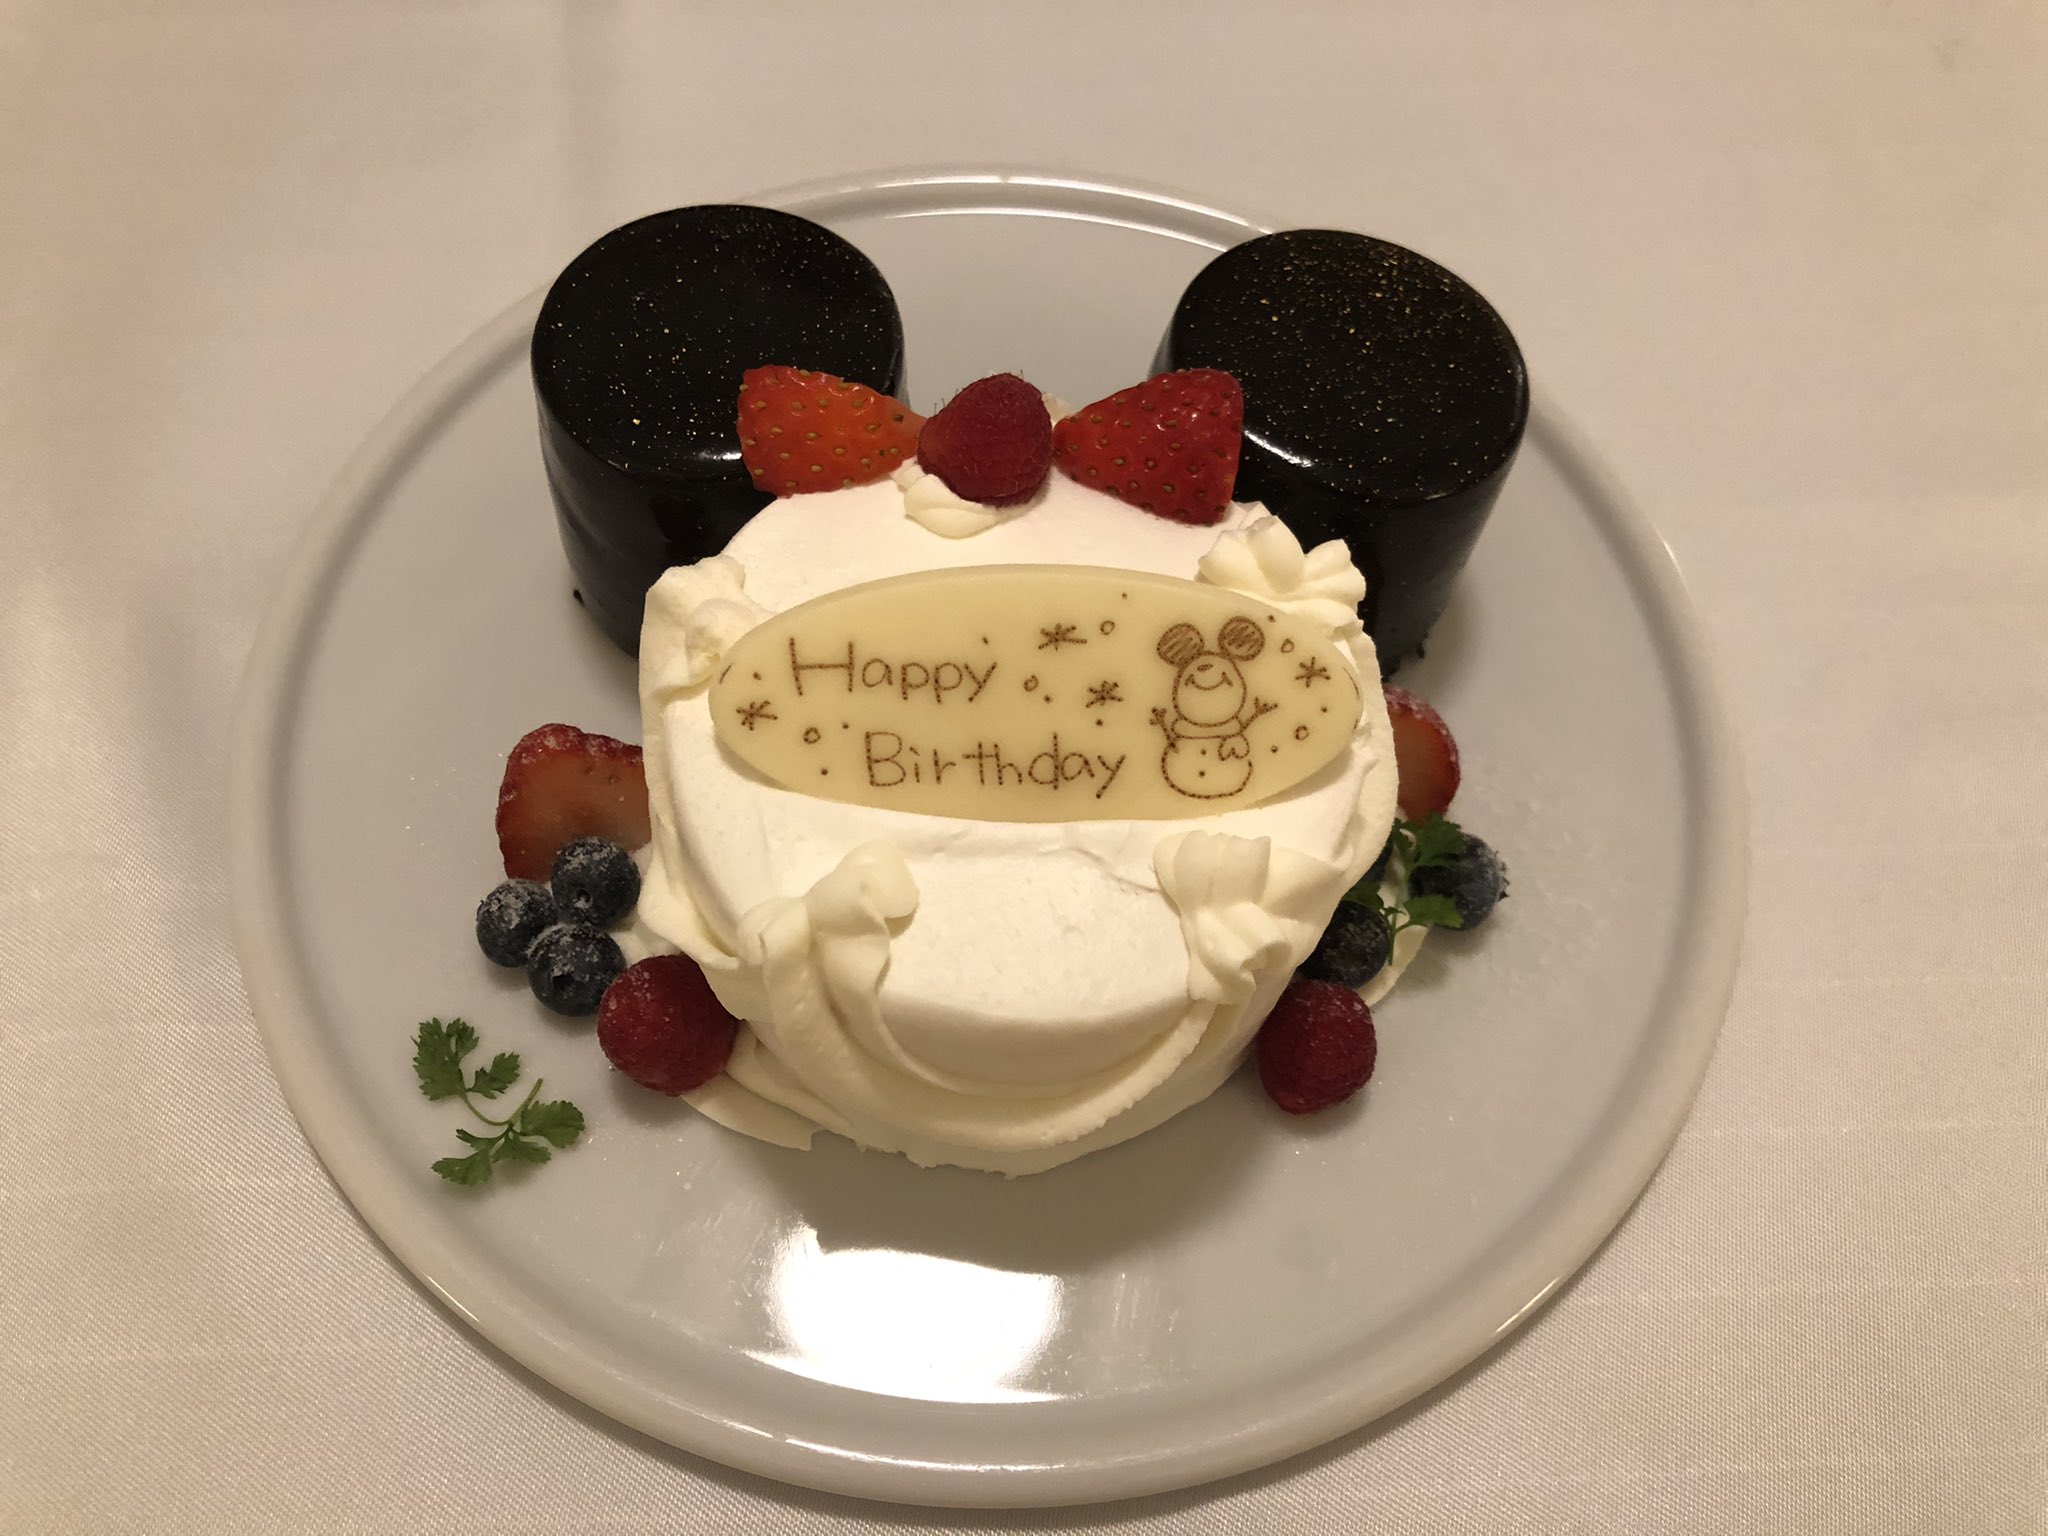 東京ディズニーリゾートpr 公式 お祝いするならどのプラン みなさんにとって記念日はいつですか 誕生日や結婚記念日 などいろいろな記念日があると思いますが 今日はデラックスタイプのディズニーホテルでご利用いただける 大切な記念日をお祝い